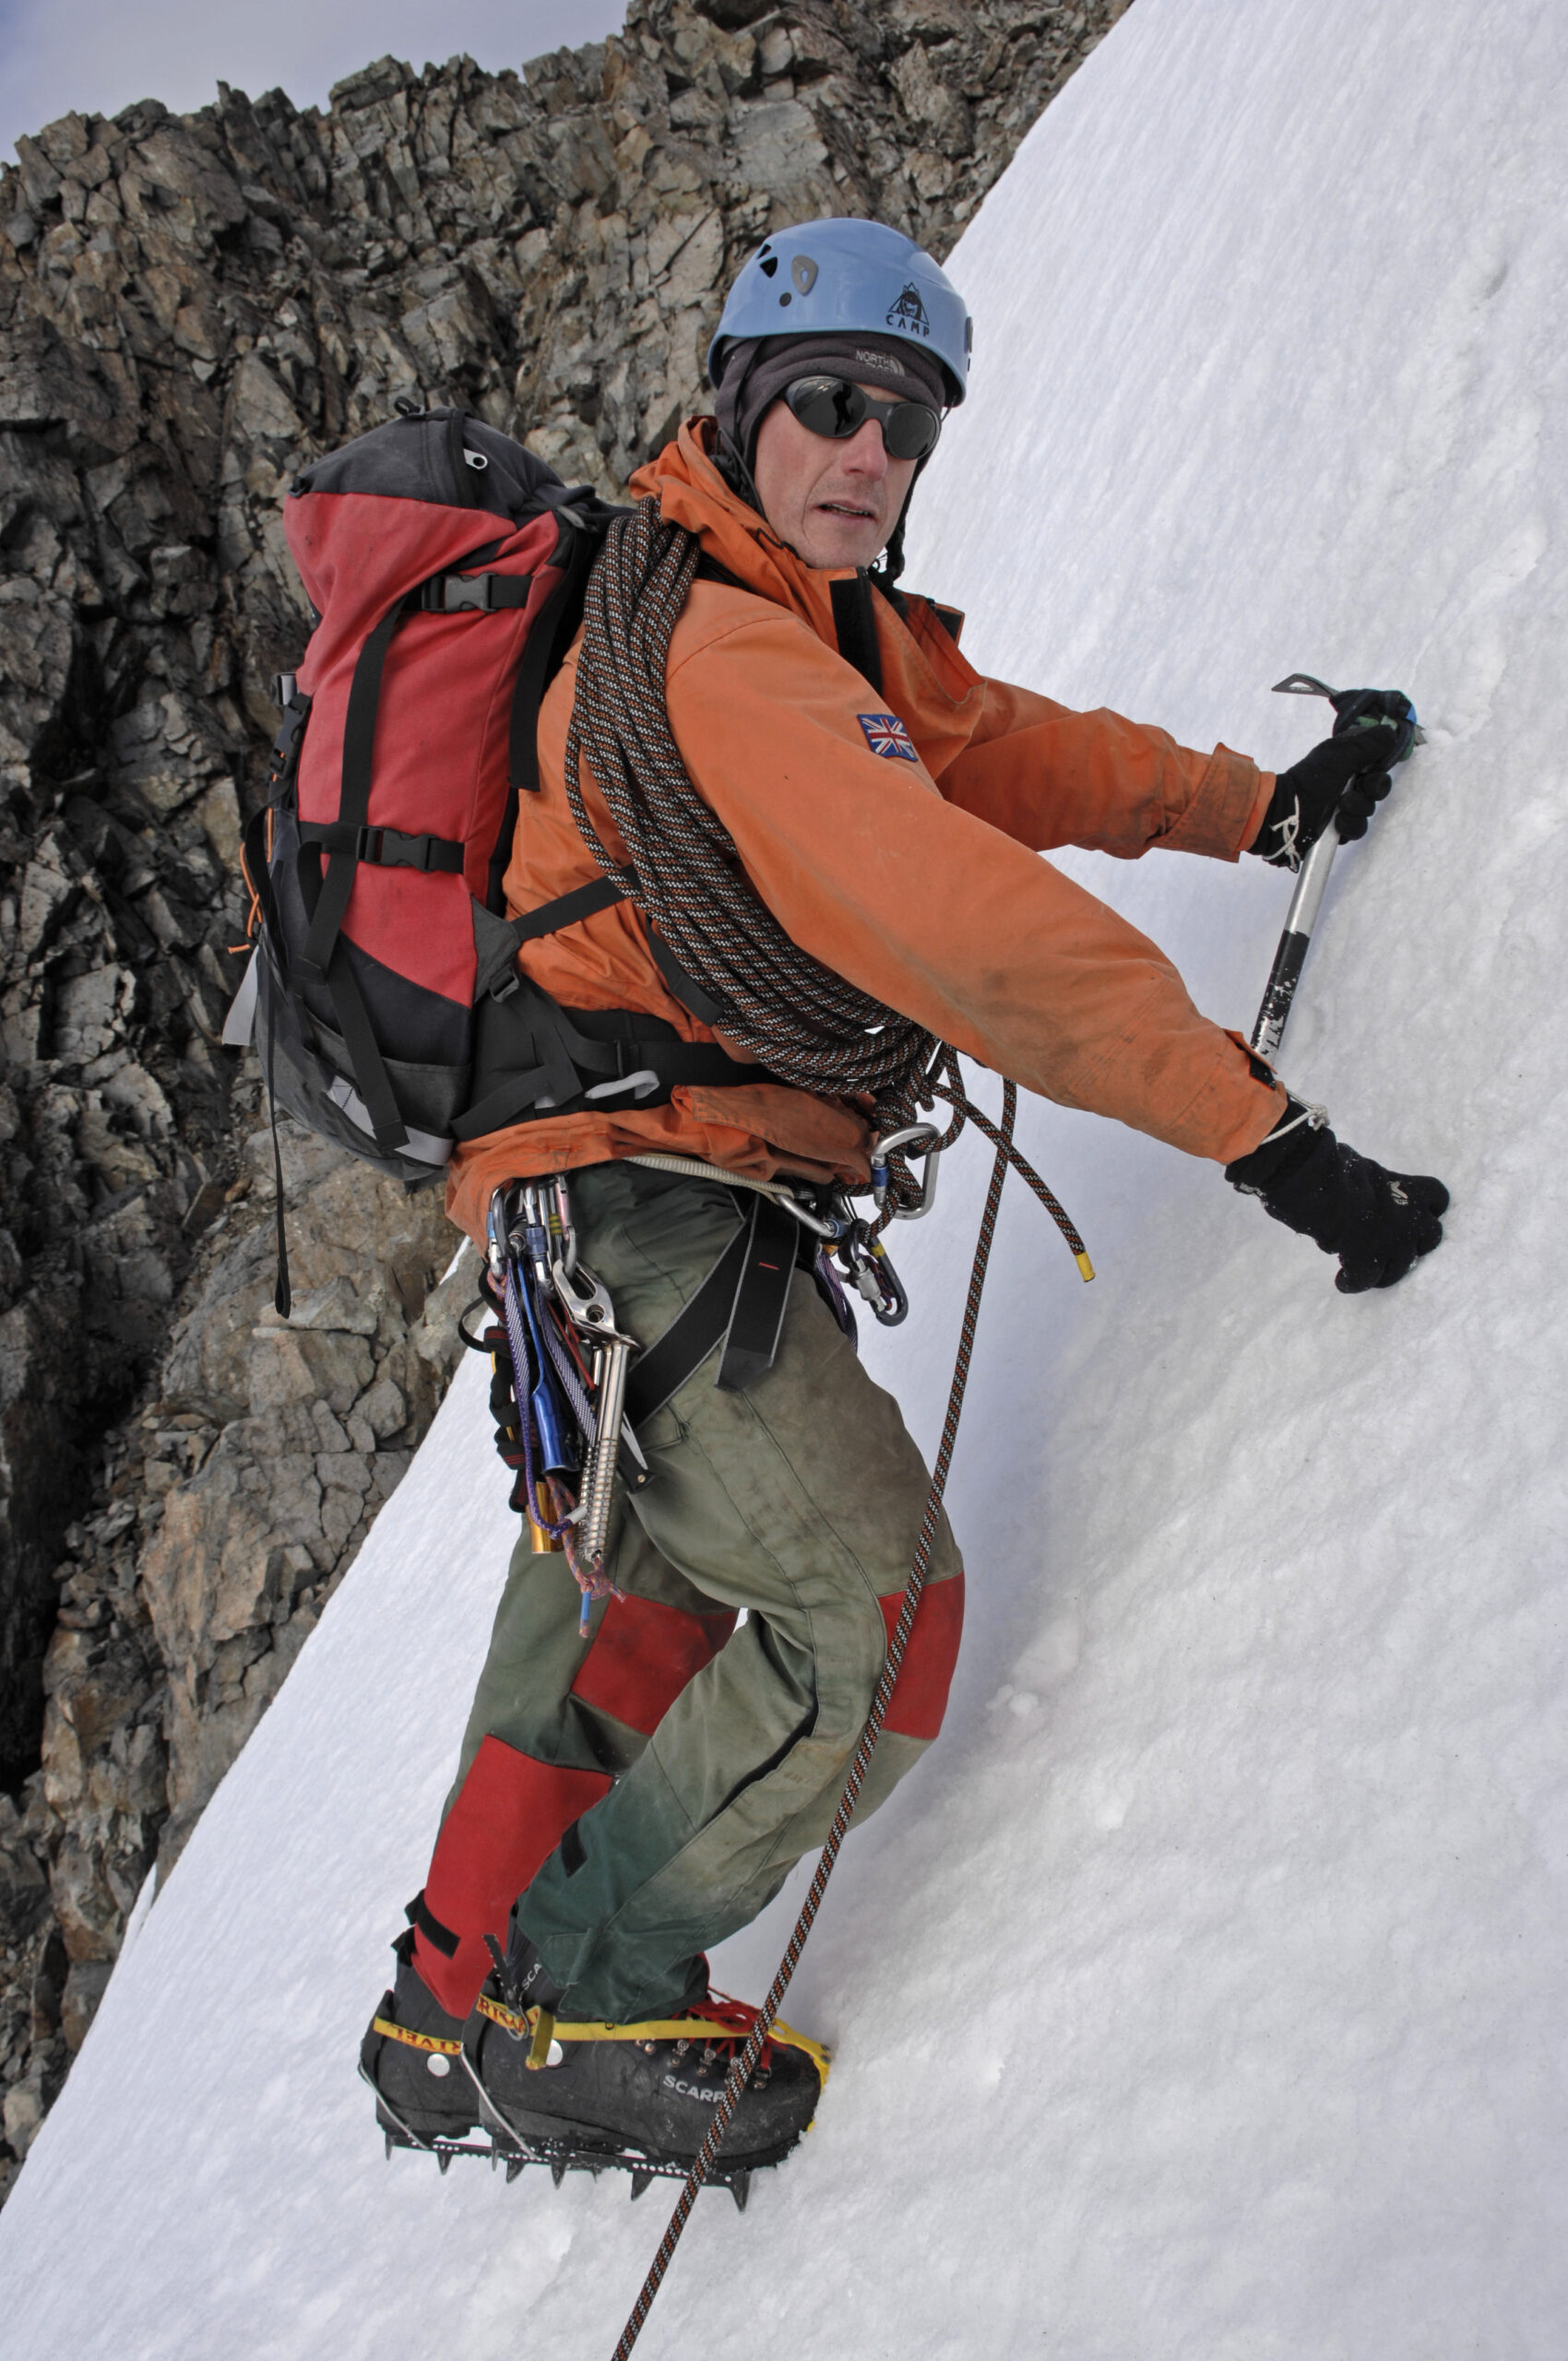 A man climbing up an icy hill